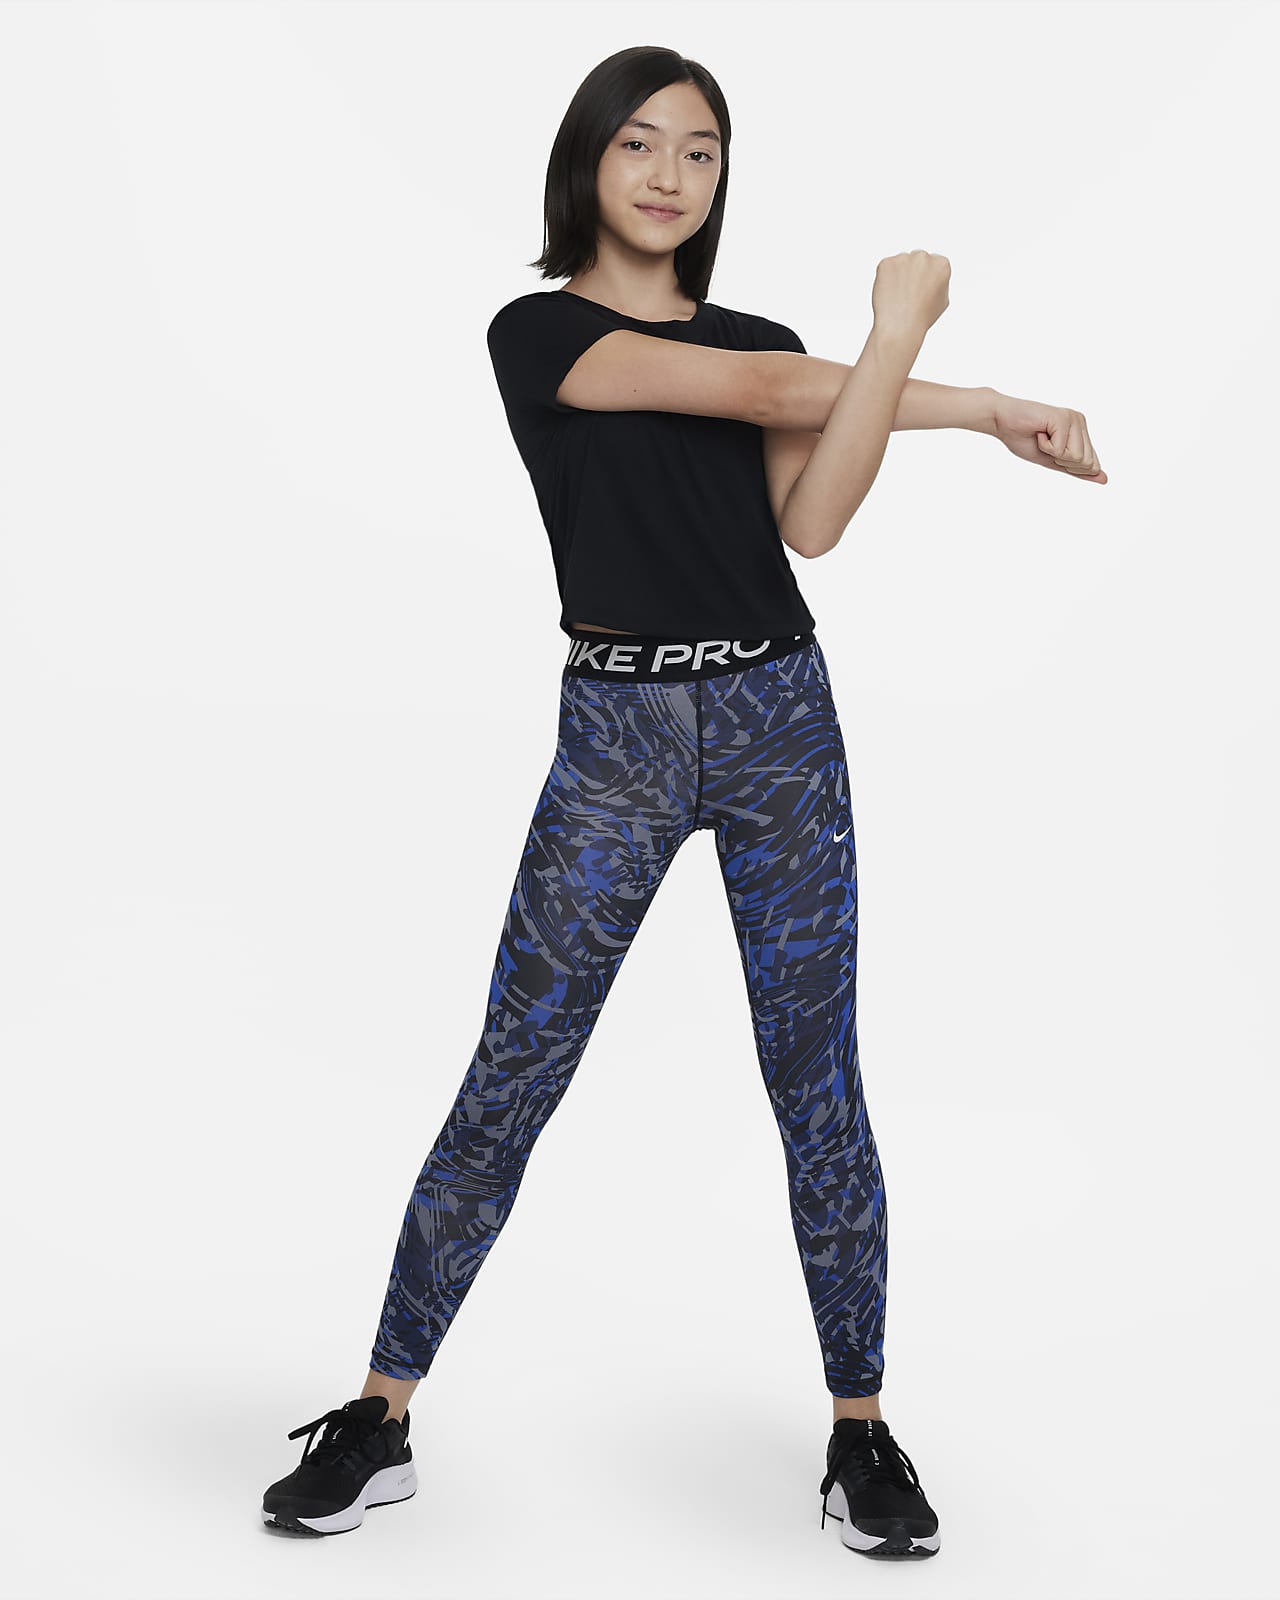 Nike Pro Dri Fit Mid Rise Girl's Leggings Size XL